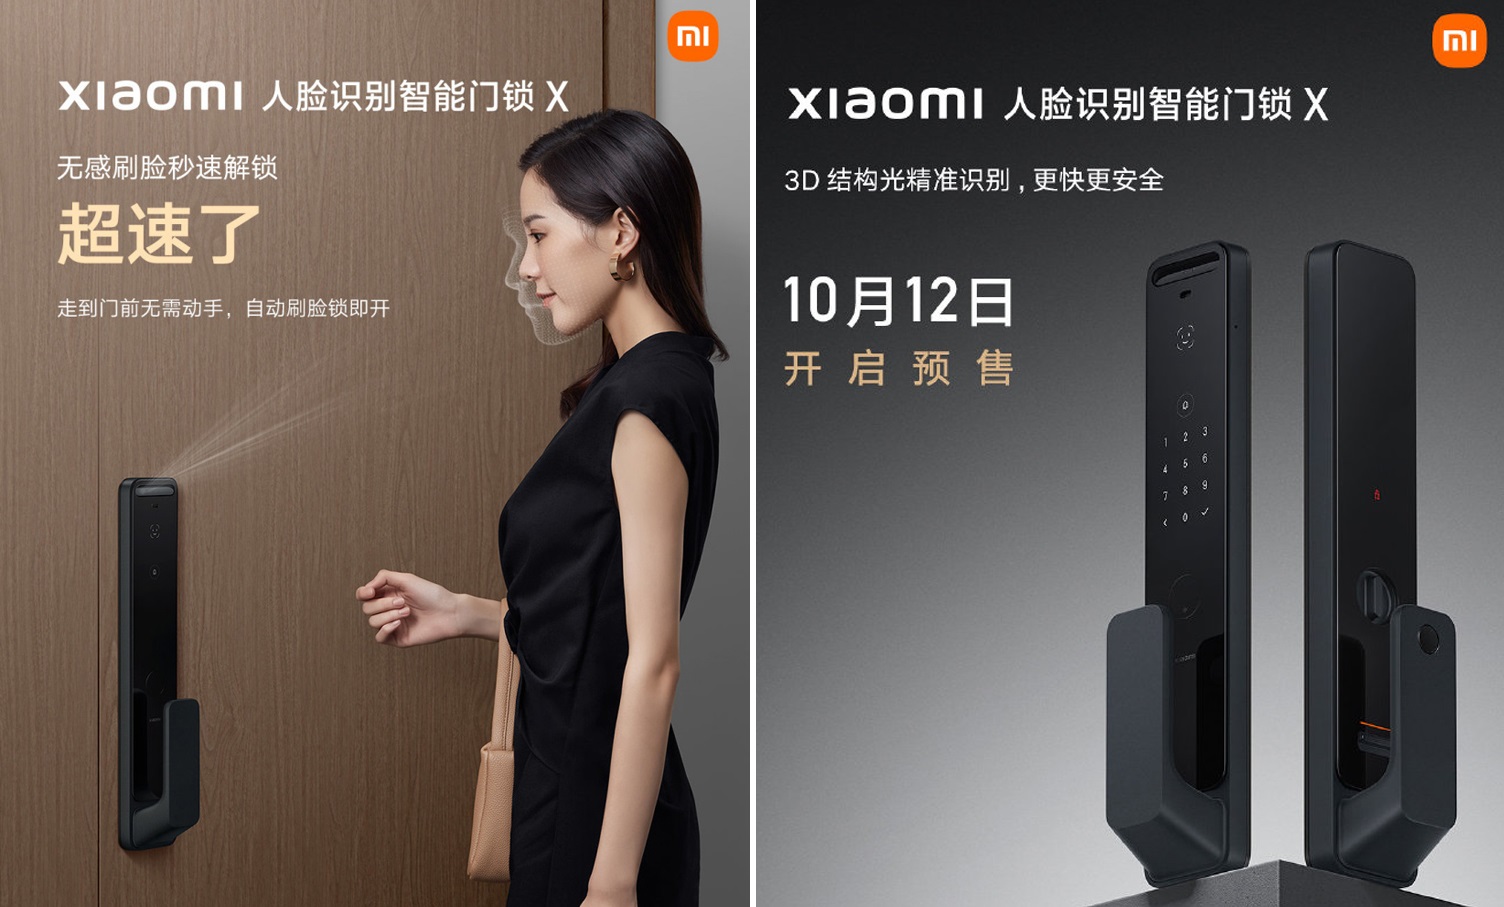 Xiaomi presenta una cerradura de puerta con NFC, pantalla AMOLED y reconocimiento facial 3D